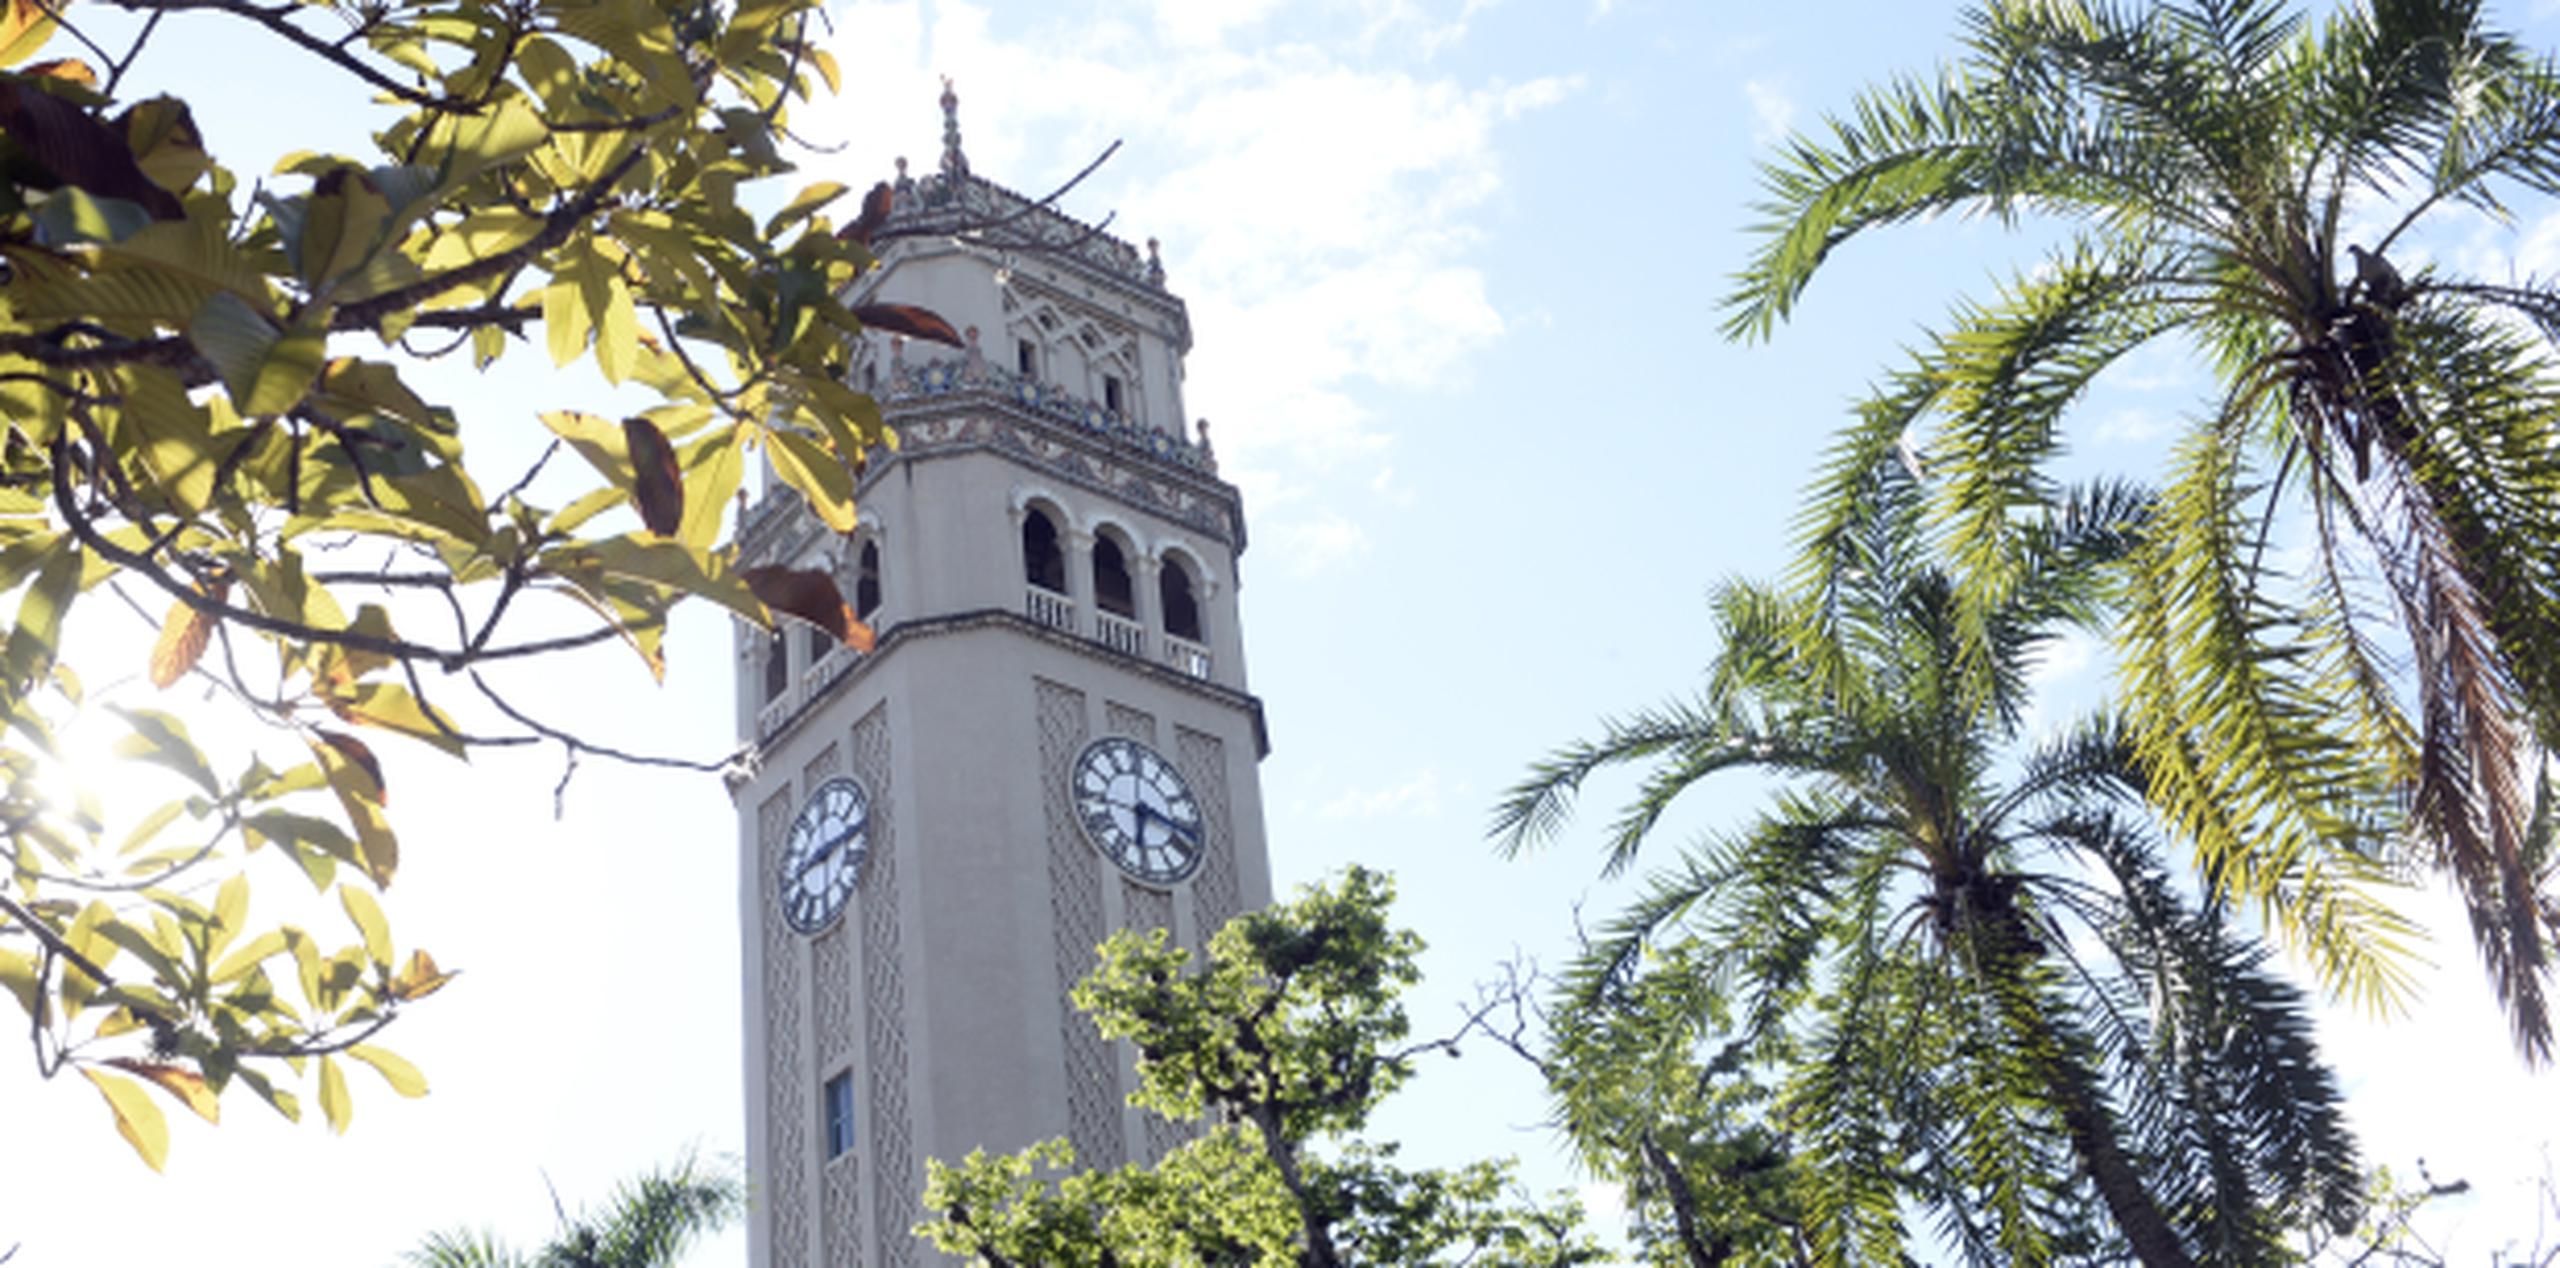 Anuncian que se mantiene en "sesión permanente" el Senado Académico del recinto de Río Piedras de la Universidad de Puerto Rico (UPR). (Archivo)